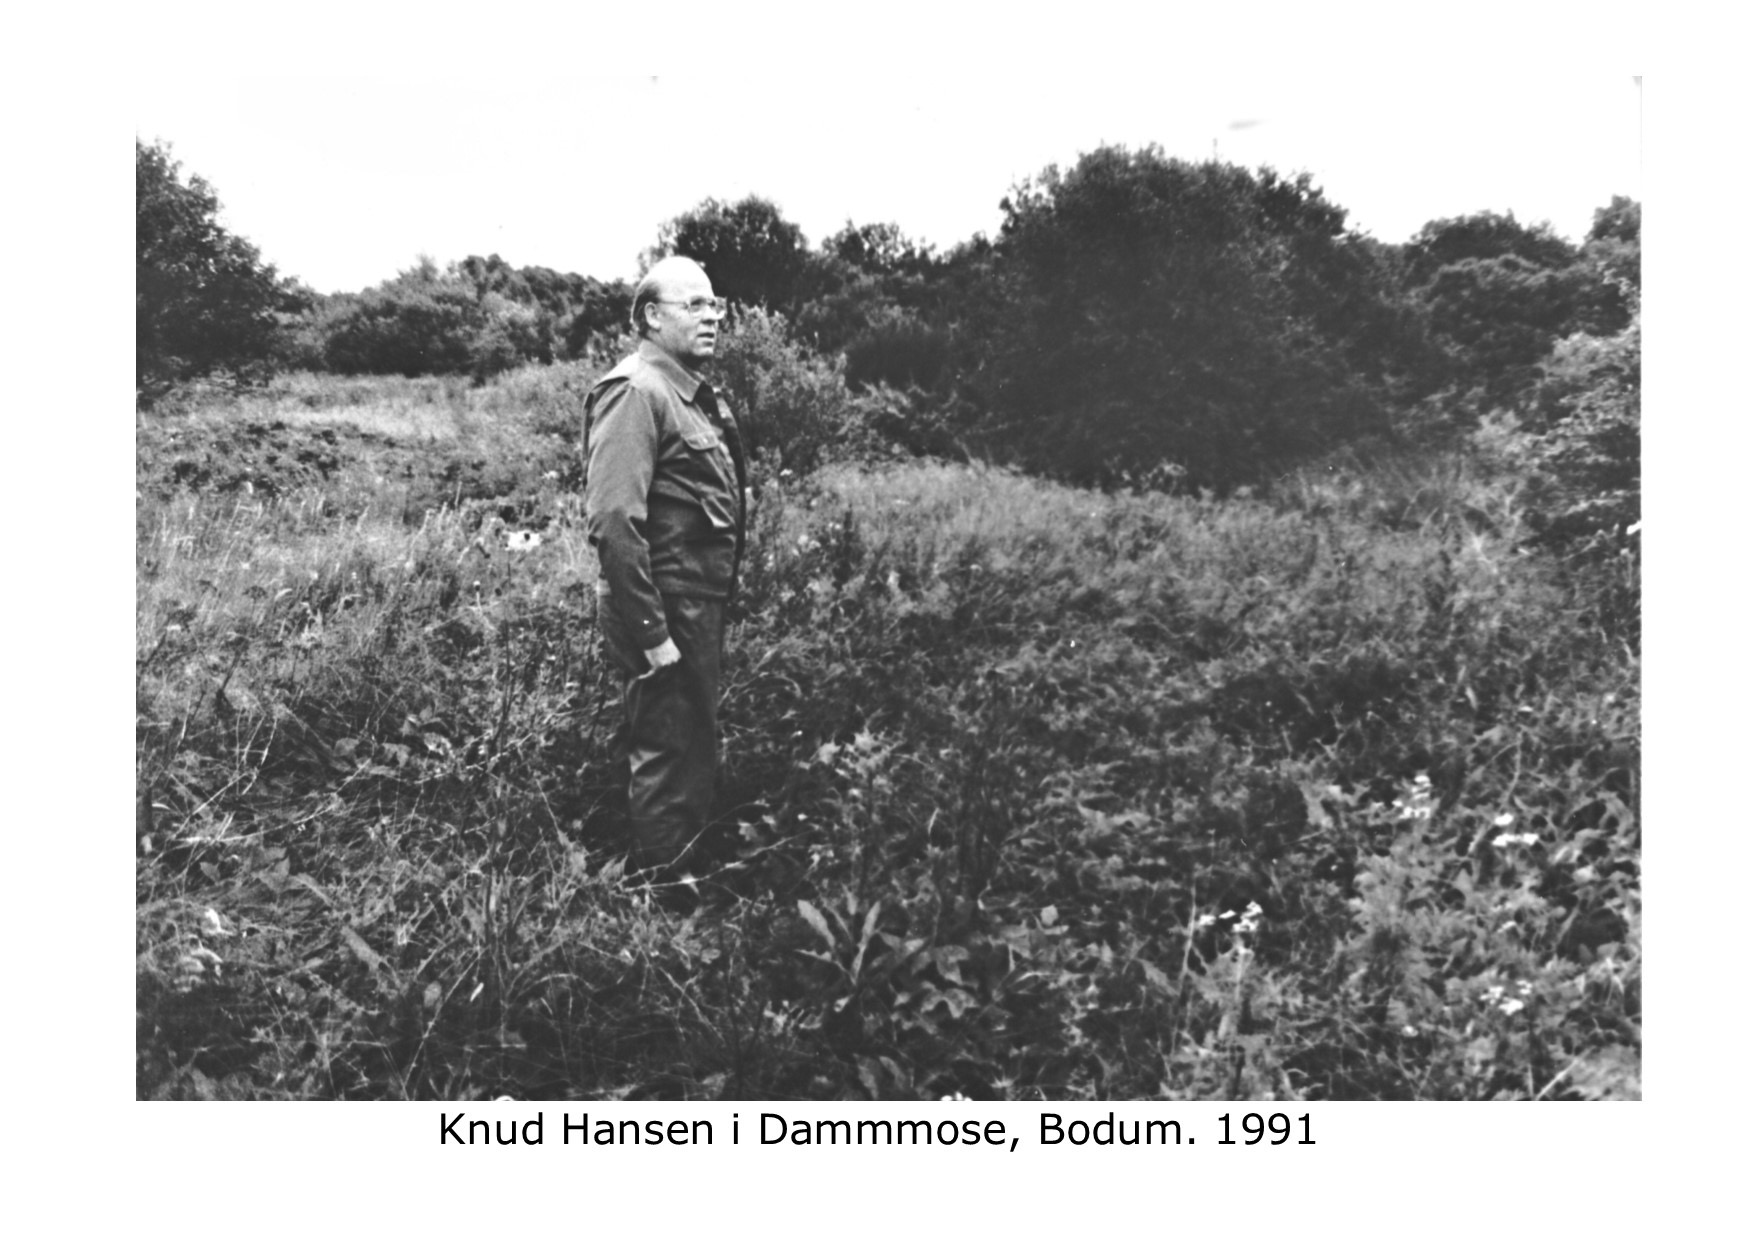 Knud Hansen i Dammmose 1991 